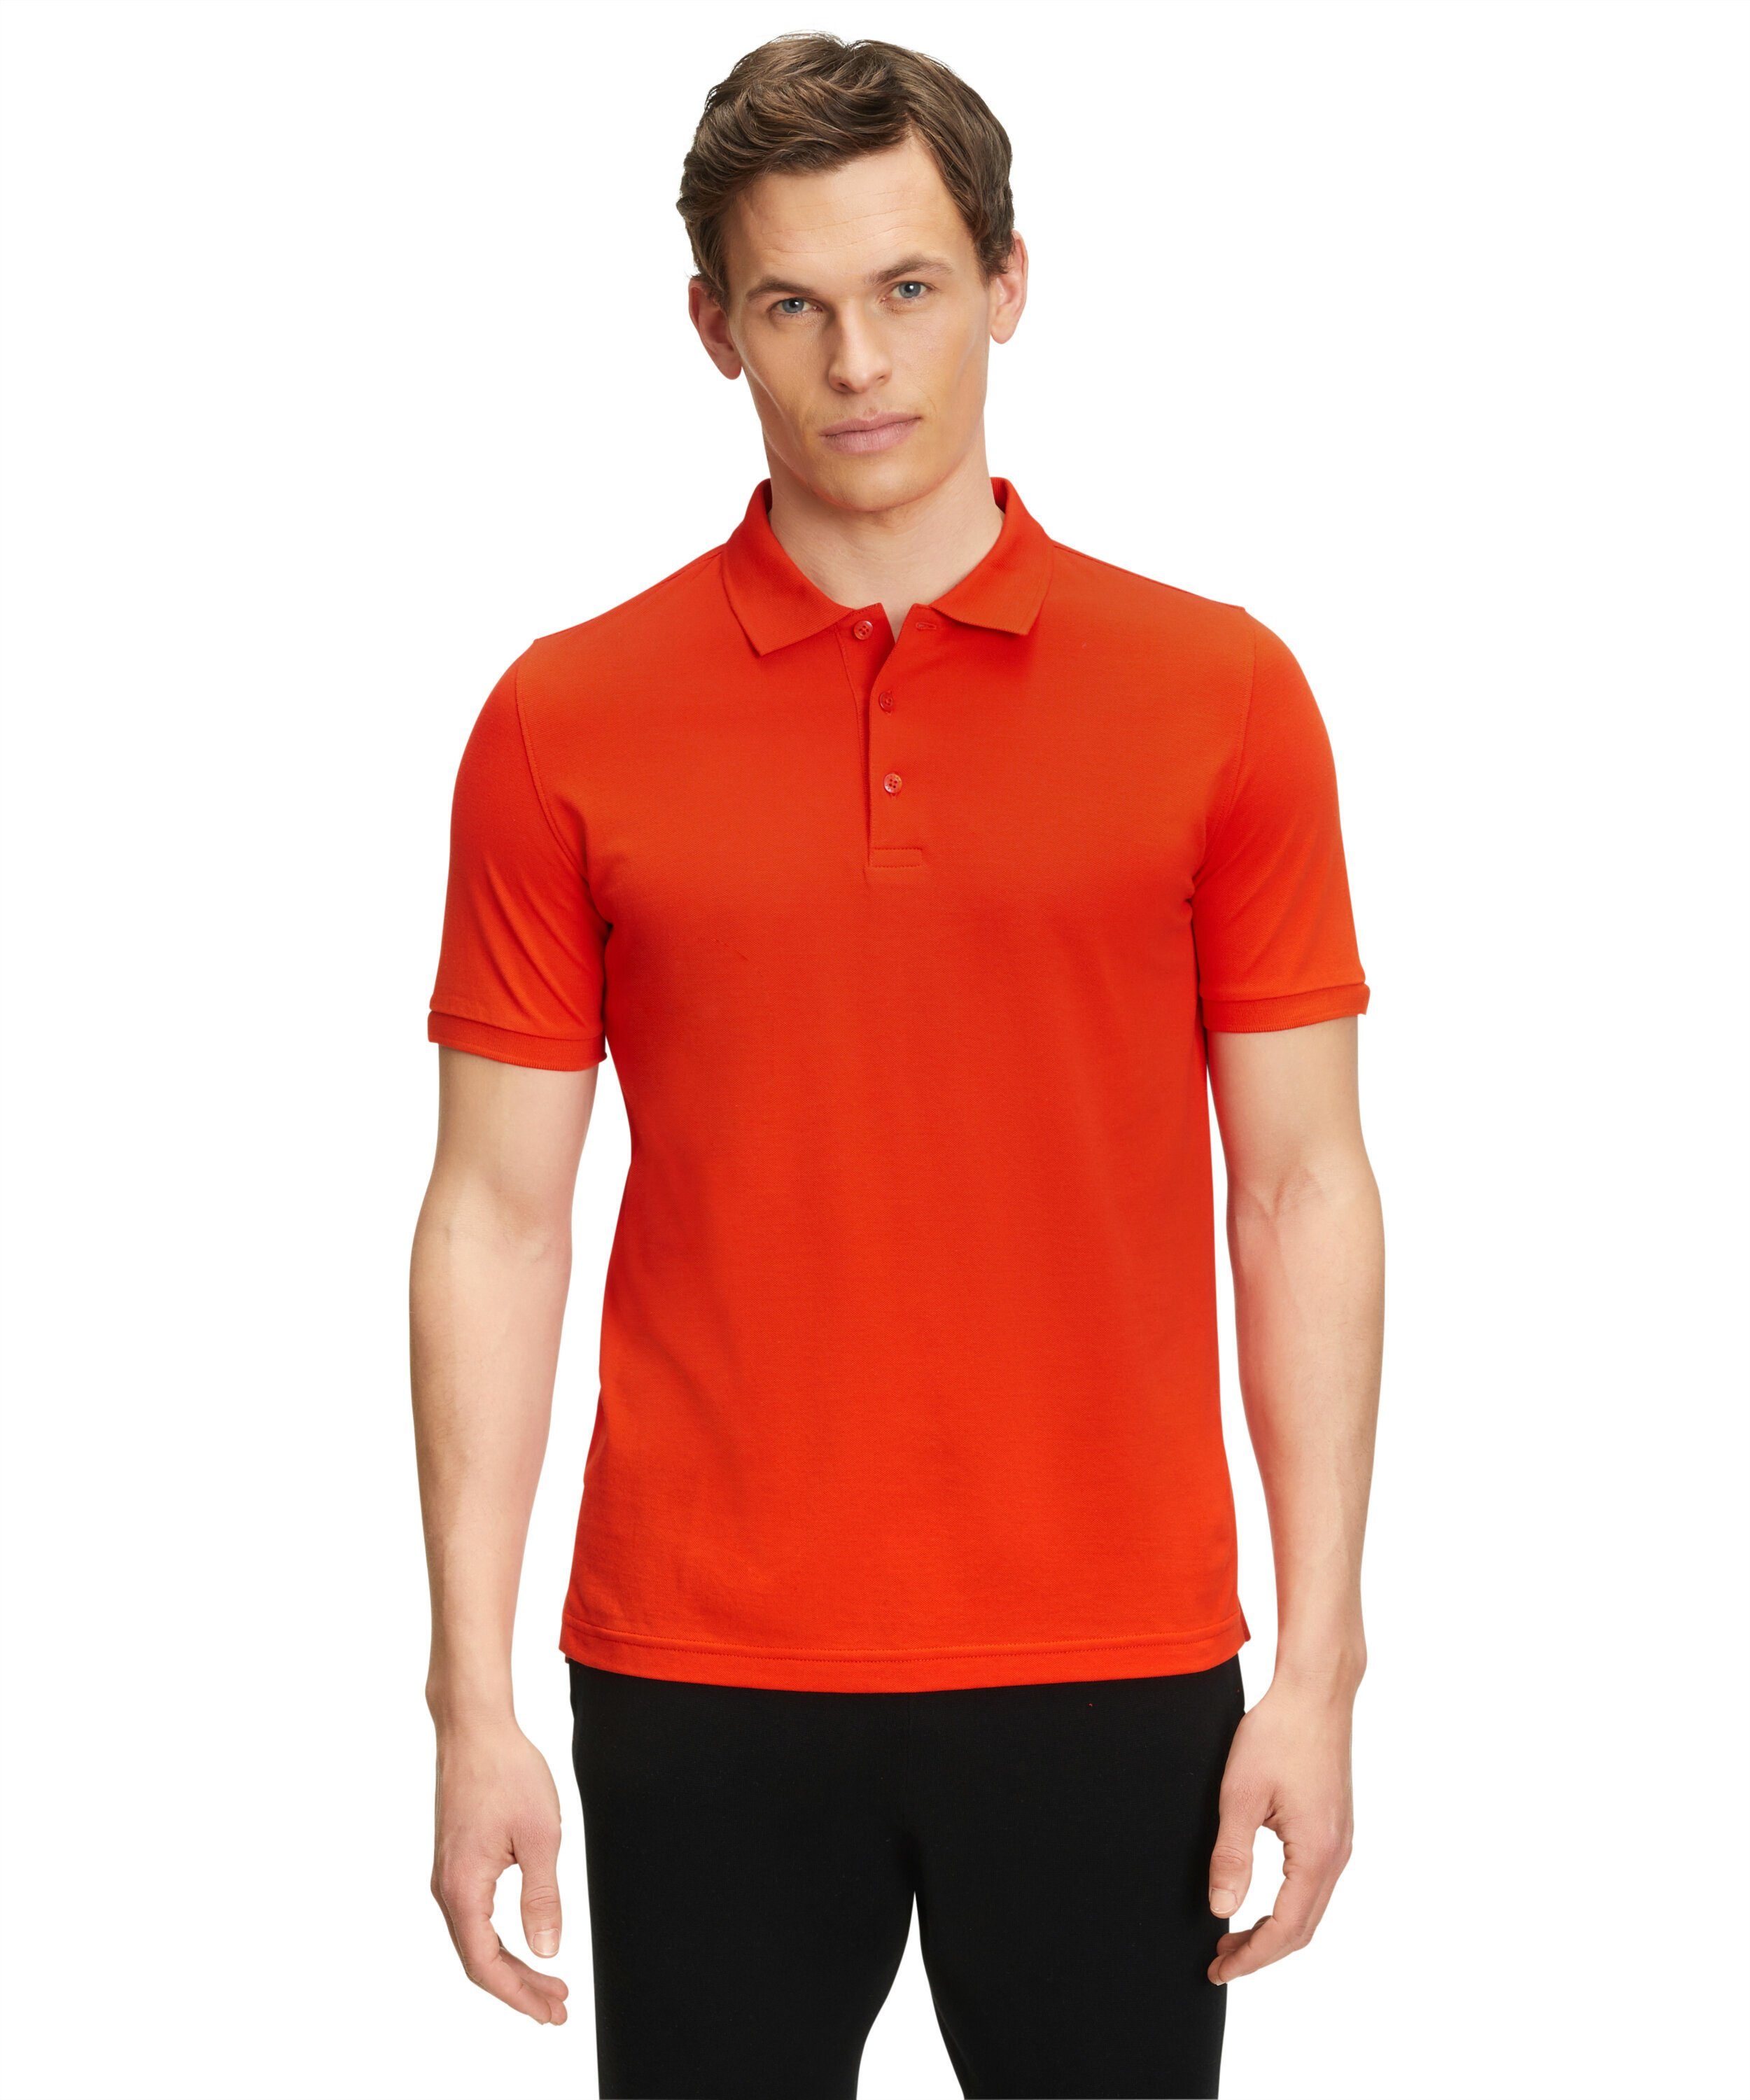 FALKE Poloshirt aus hochwertiger Pima-Baumwolle safety orange (8314)